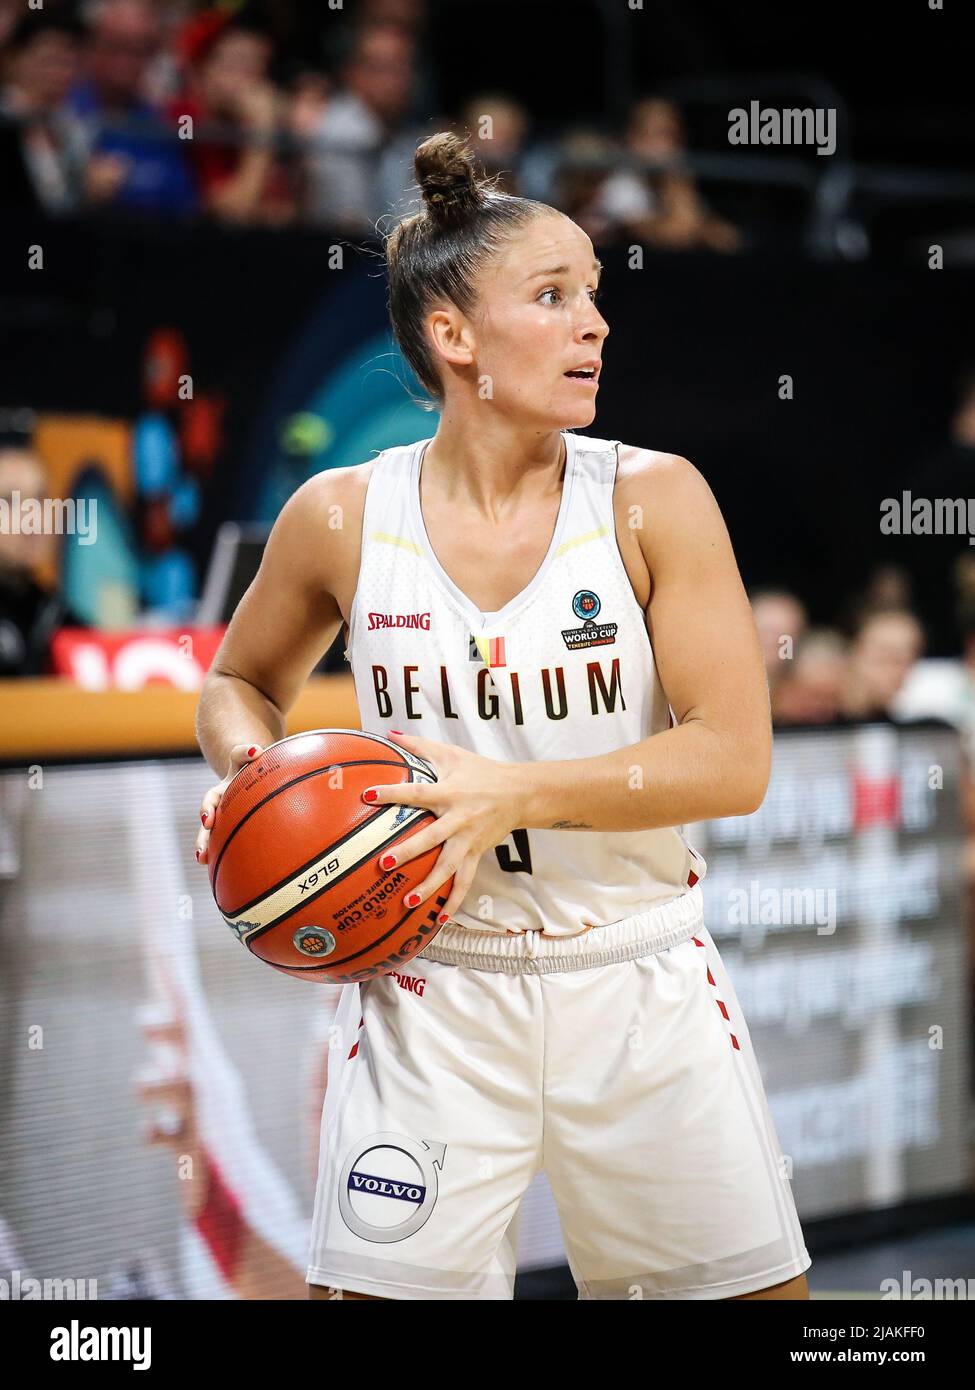 Espagne, Ténérife, 29 septembre 2018: Joueuse de basket-ball Marjorie Carpreaux pendant la coupe du monde de basket-ball féminin FIBA 2018 Banque D'Images